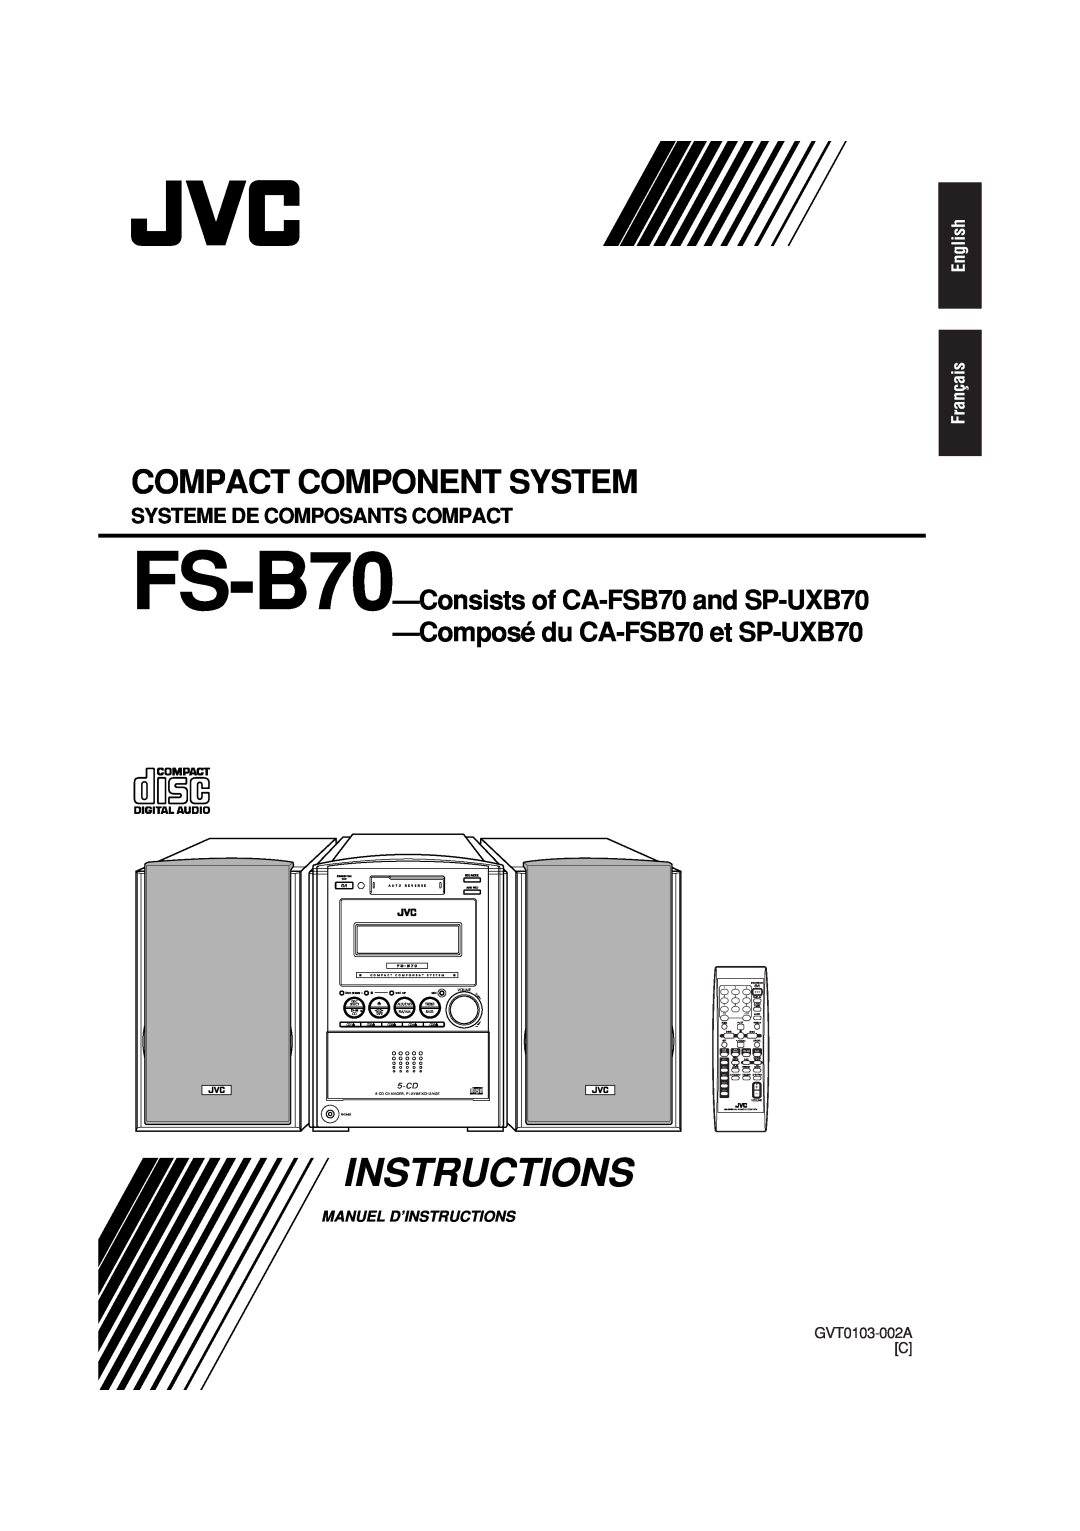 JVC Composédu CA-FSB70et SP-UXB70, Systeme De Composants Compact, Instructions, Compact Component System, GVT0103-002AC 